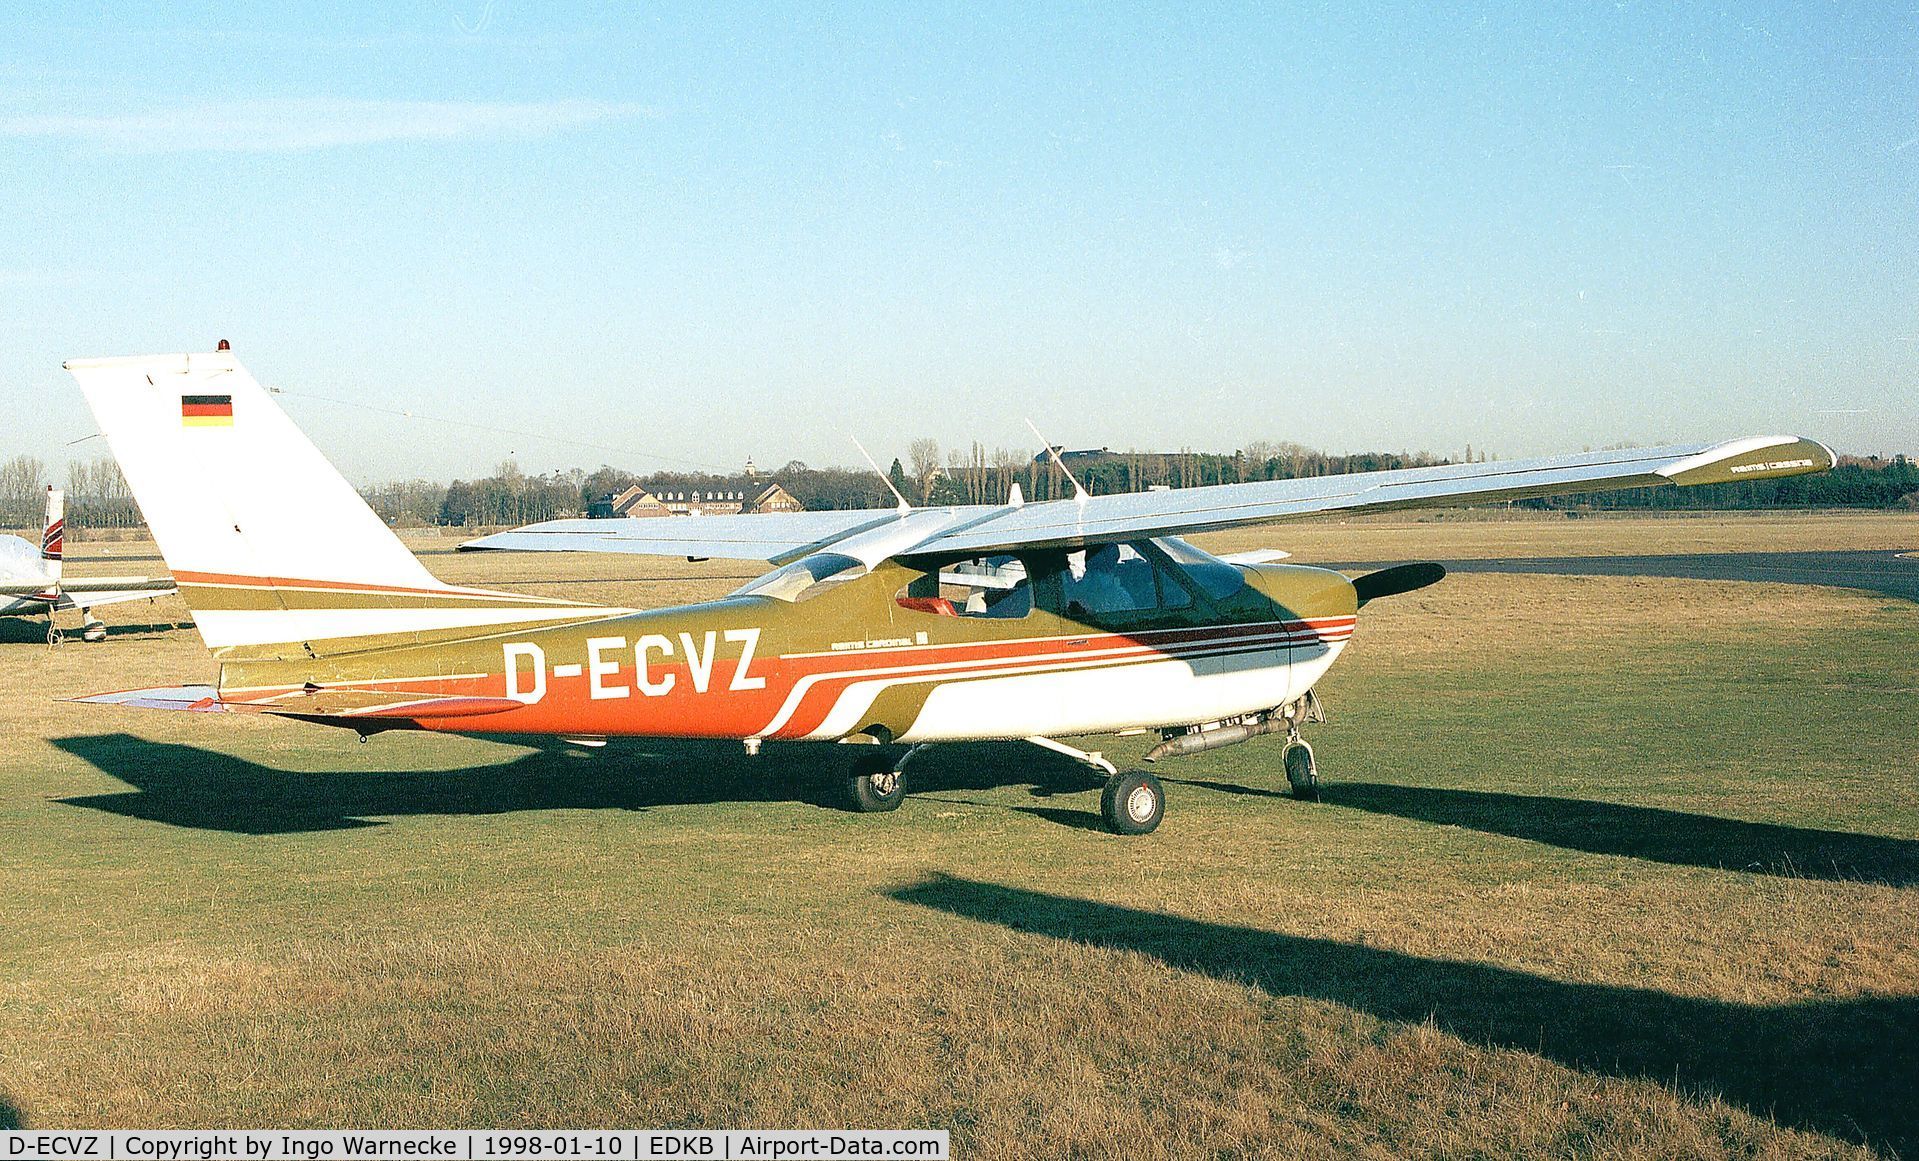 D-ECVZ, Reims F177RG Cardinal RG C/N 0074, Cessna (Reims) F177RG Cardinal RG at Bonn-Hangelar airfield